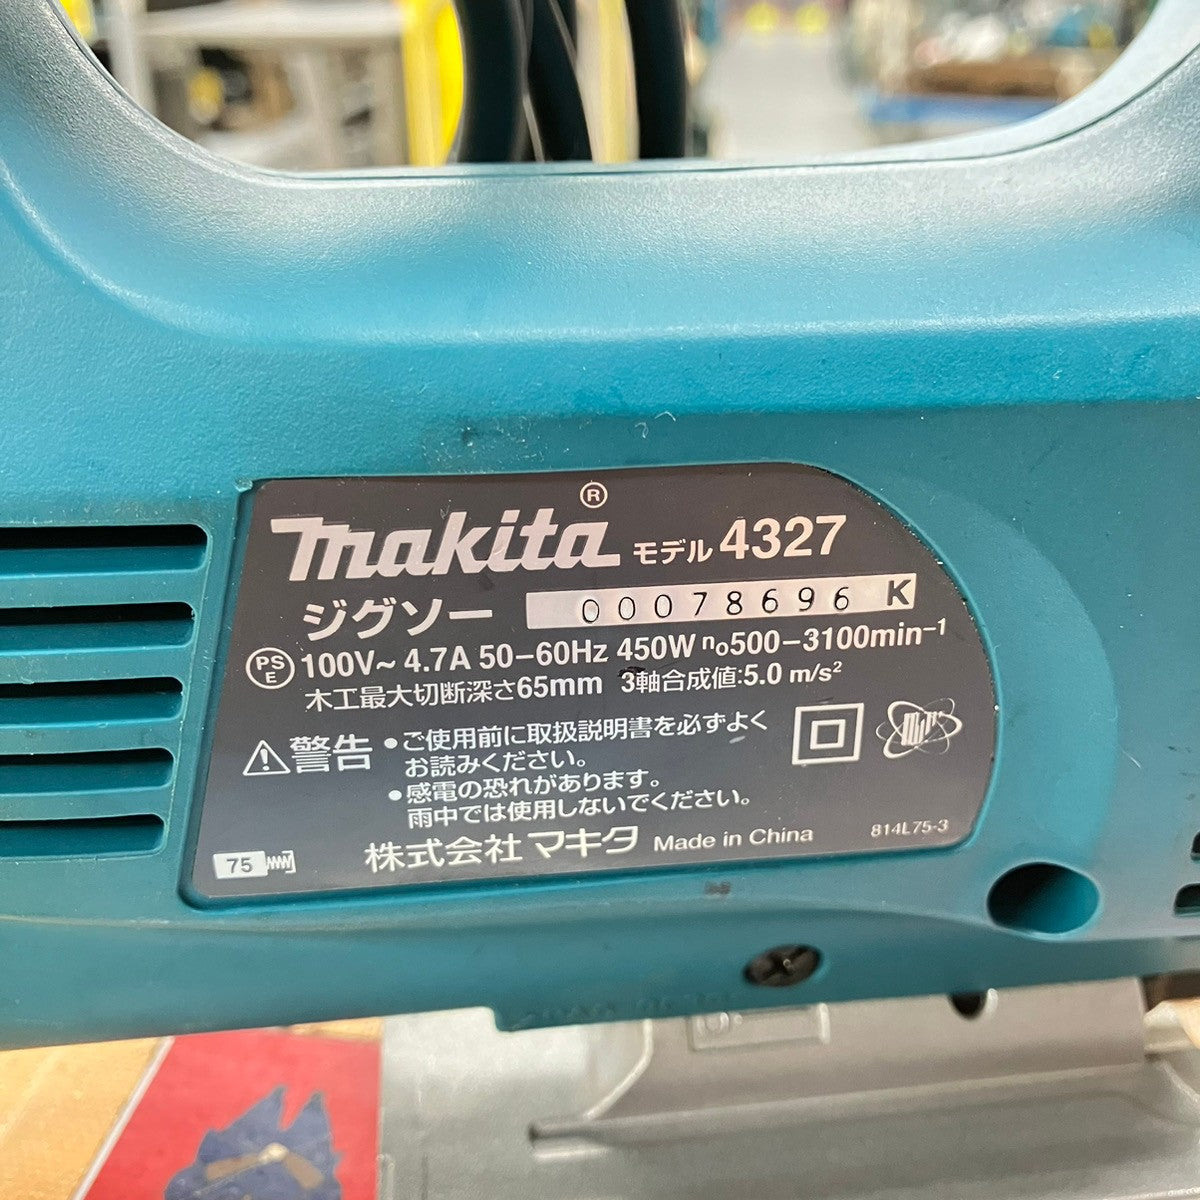 マキタ makita ジグソー 4327 【戸田店】 – アクトツールオンライン